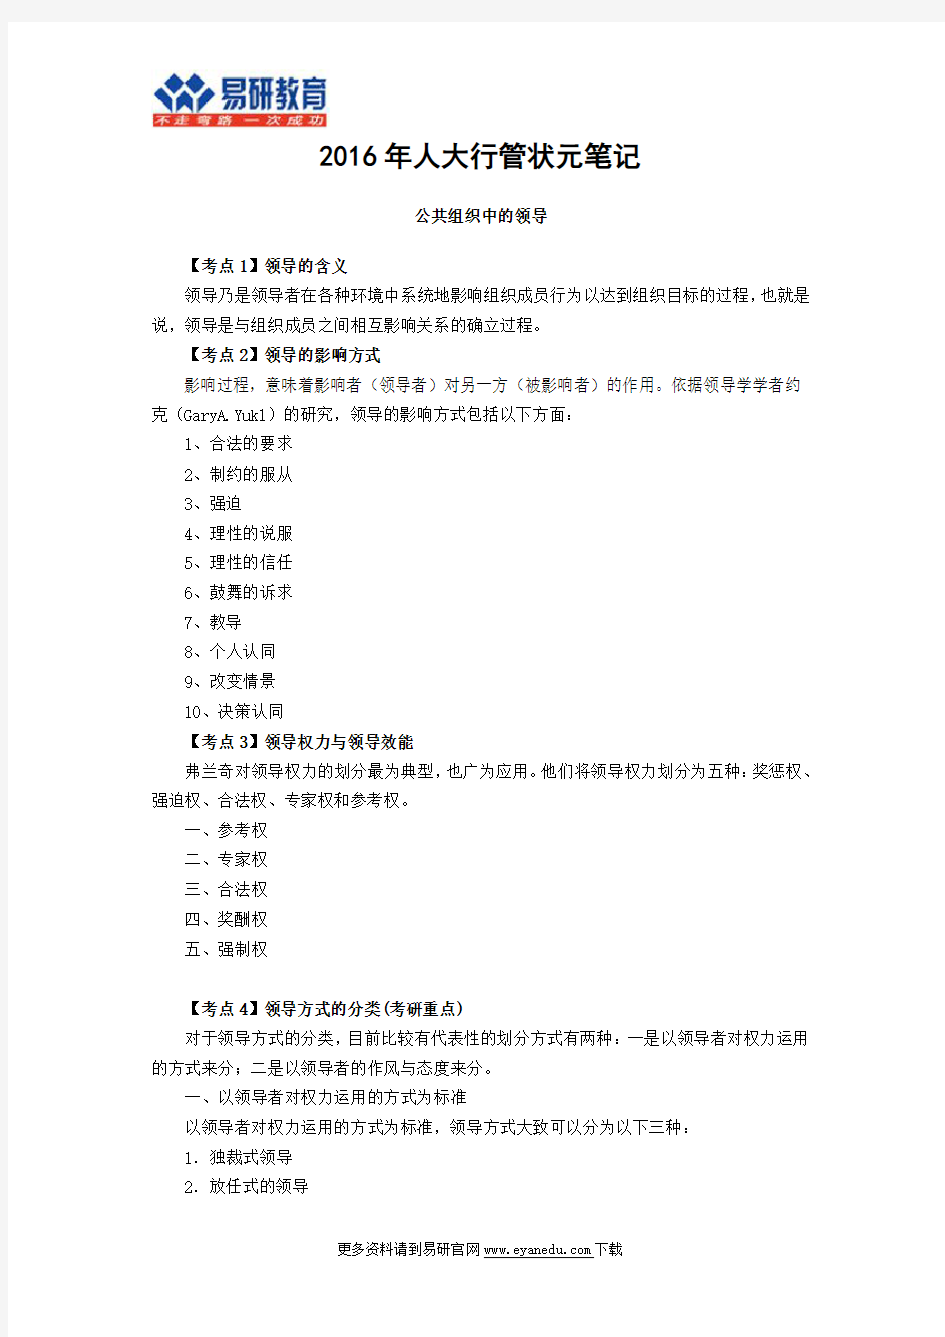 2018中国人民大学行政管理考研状元笔记内容